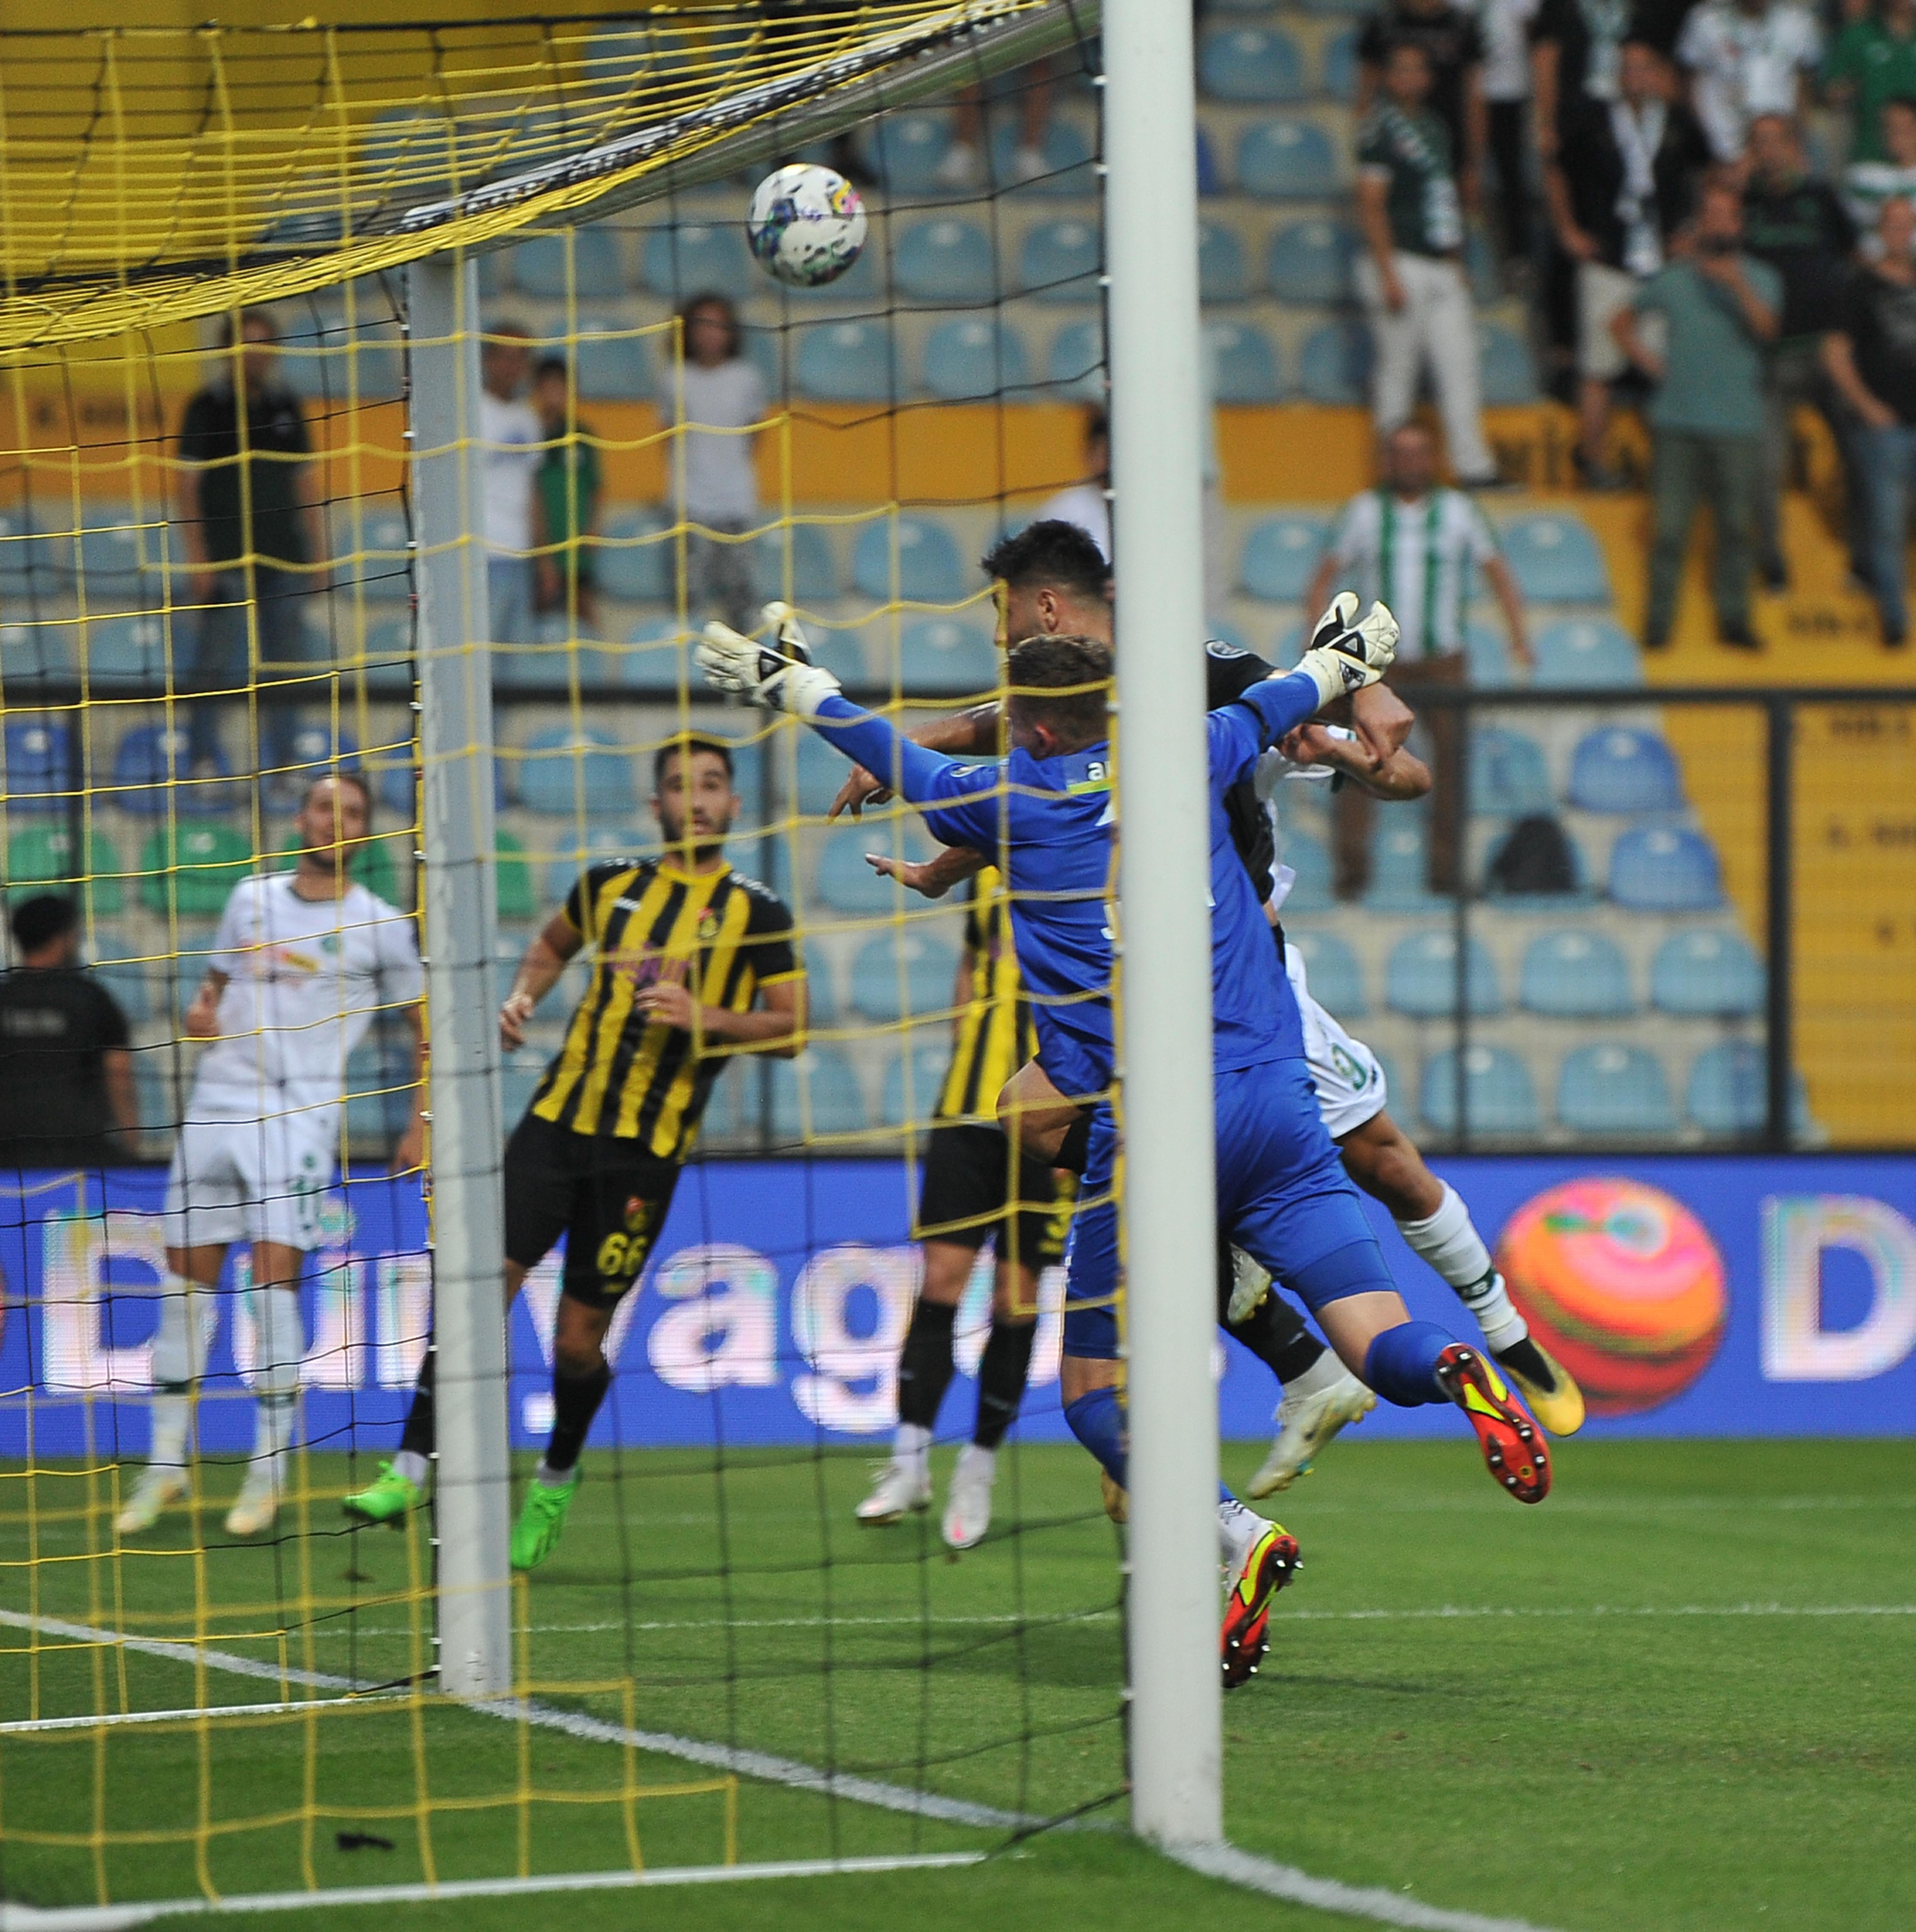 (ÖZET) İstanbulspor - Konyaspor maç sonucu: 0-4